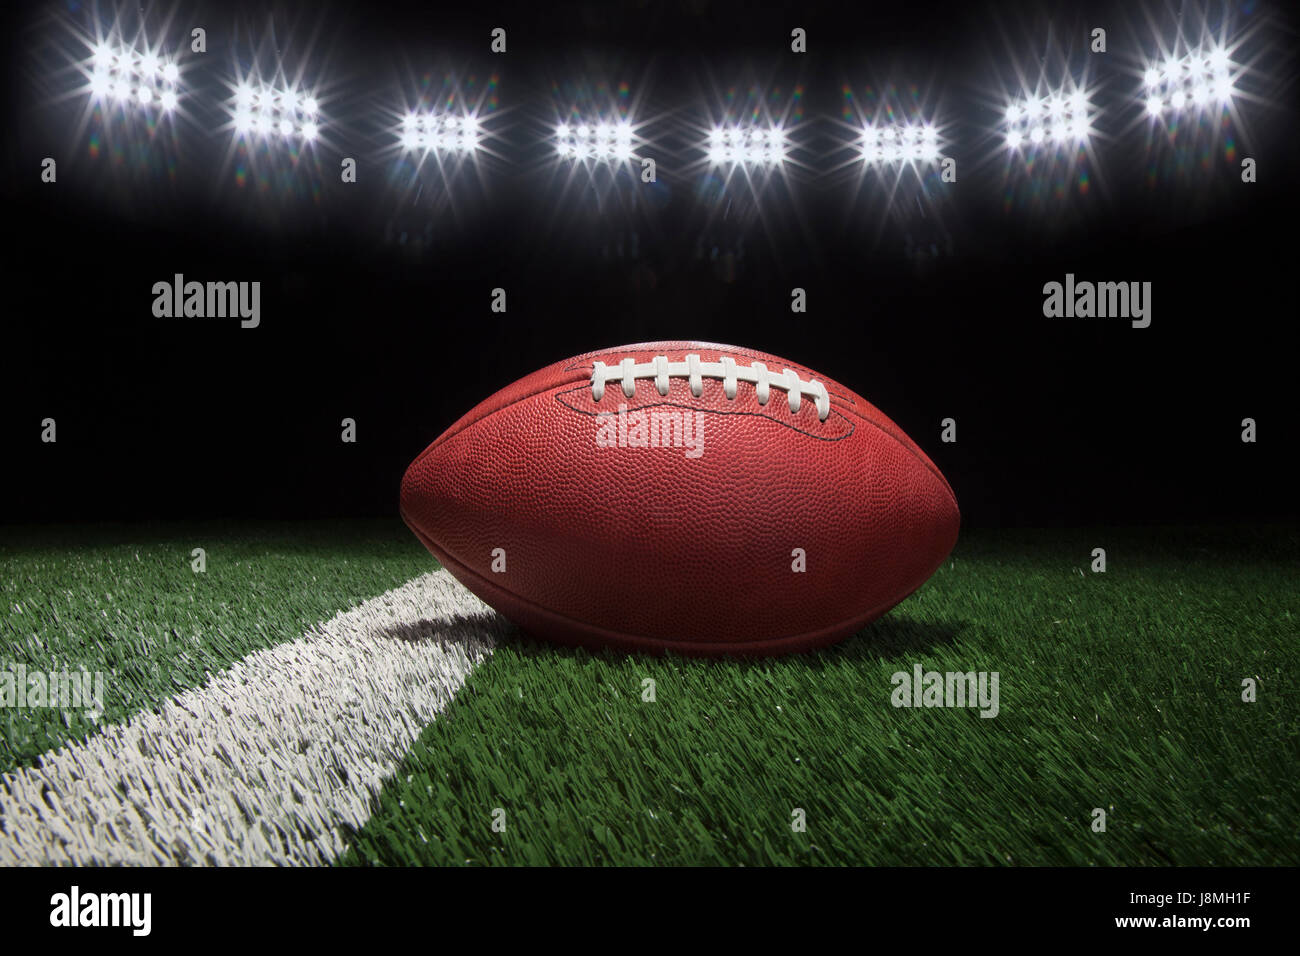 Low angle view of professional football style sur cour ligne de champ sous les lumières du stade Banque D'Images